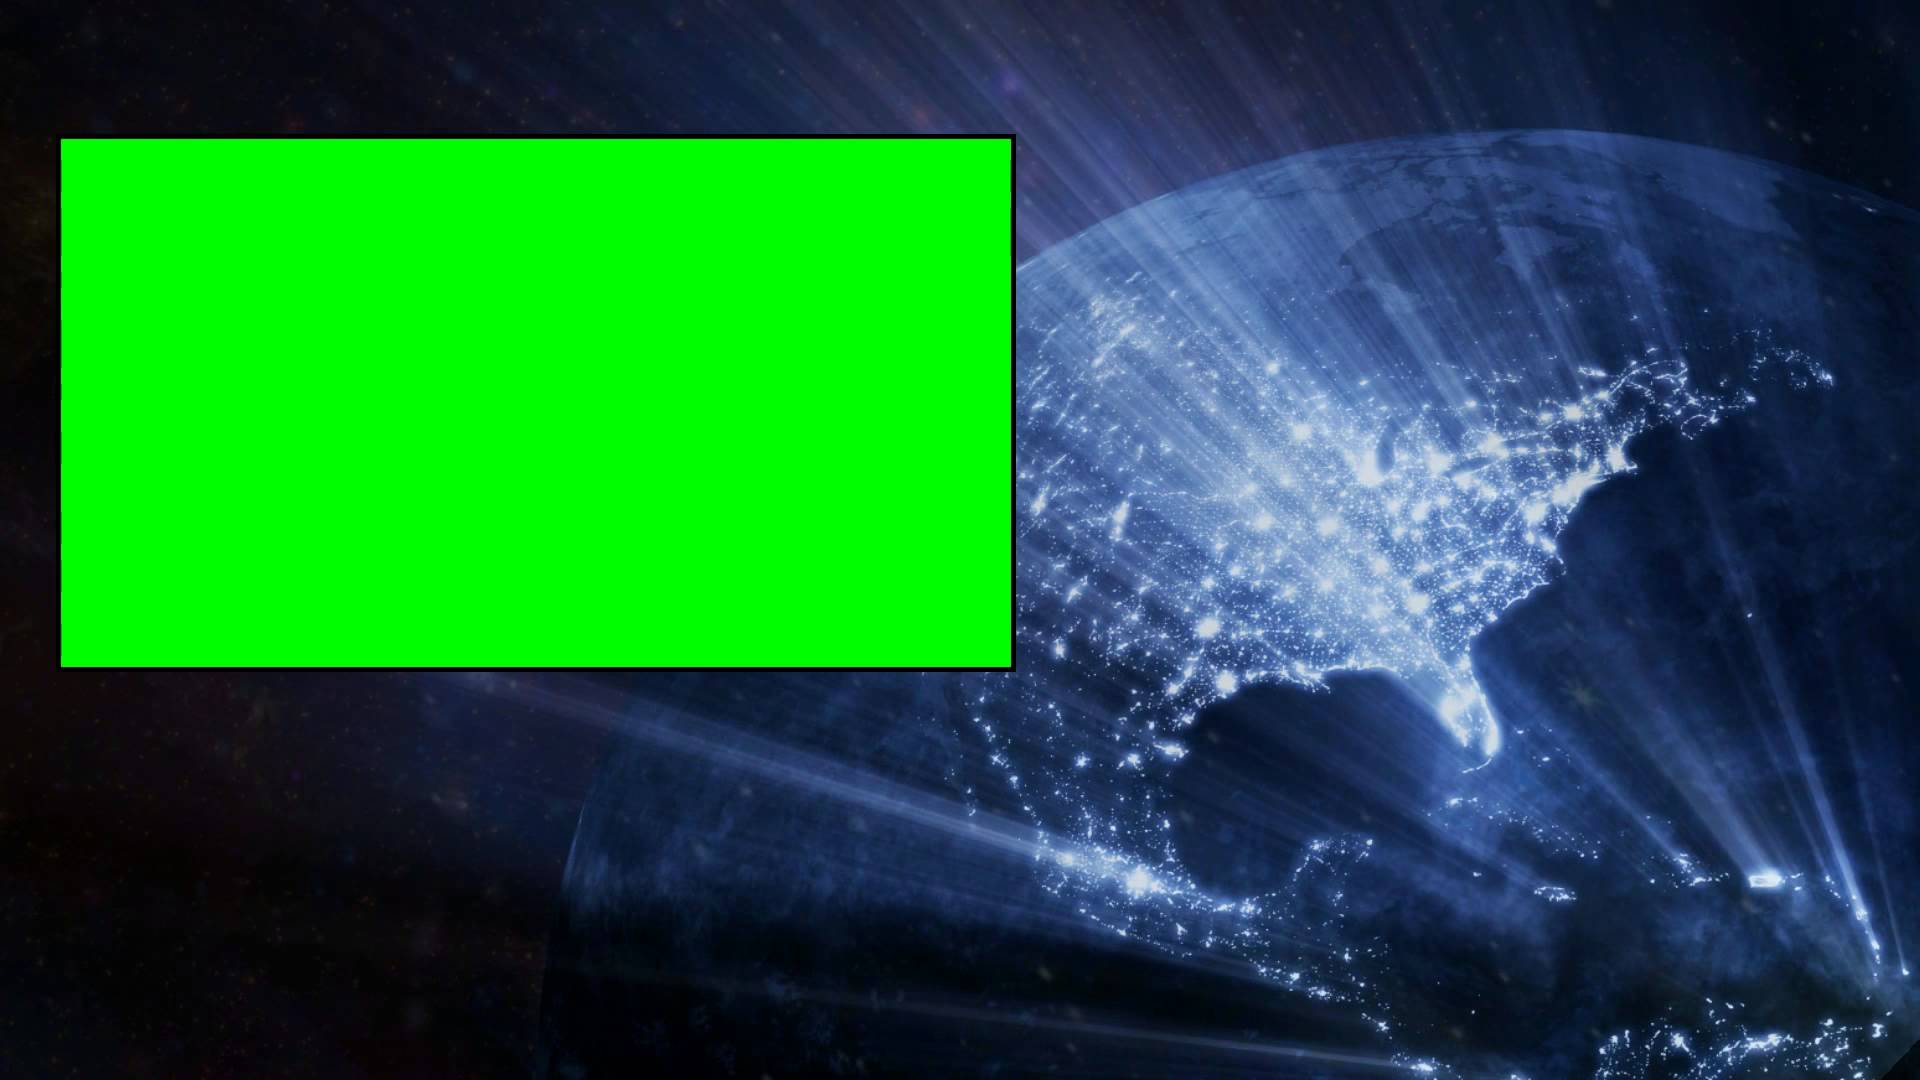 4k video green screen